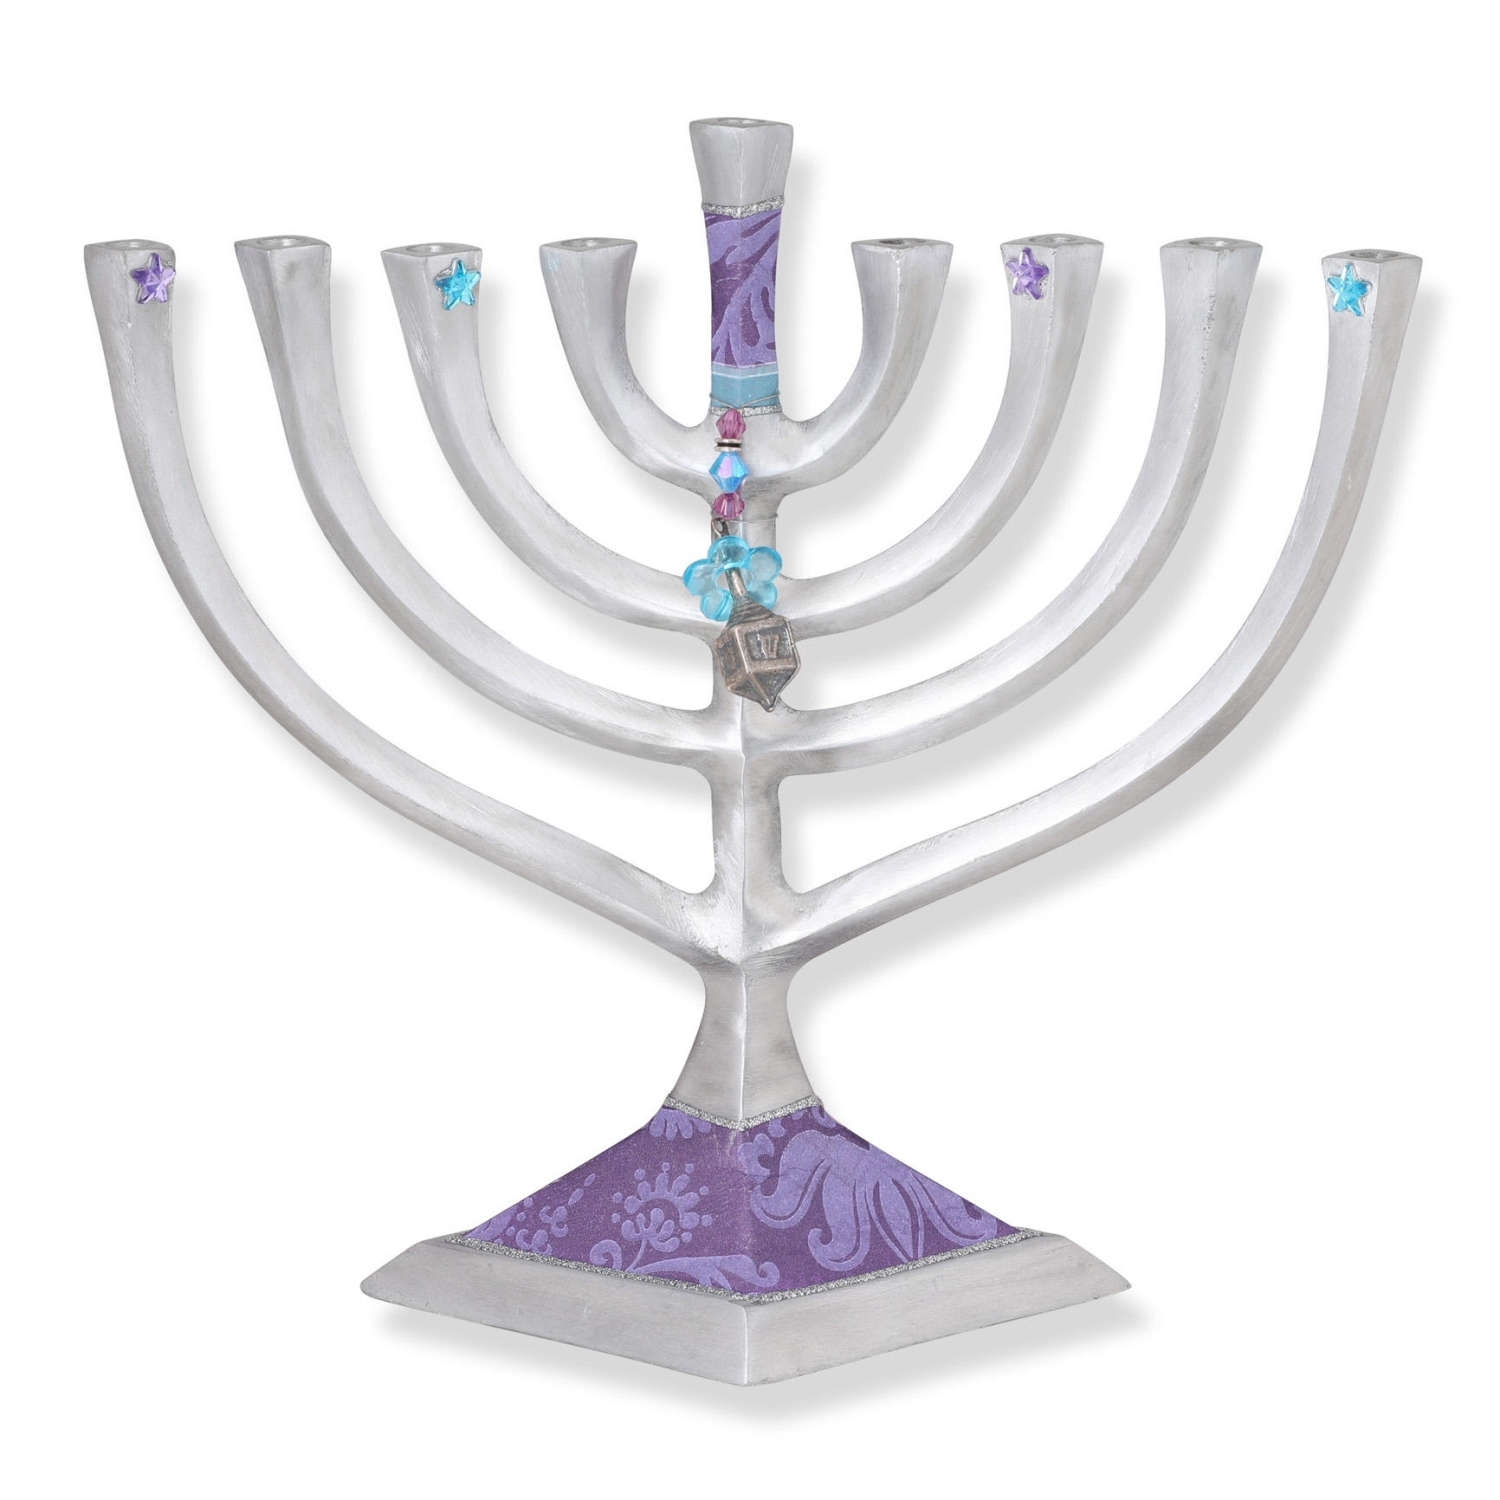 Lily Art Aluminum Hanukkah Menorah with Dreidel (Purple) - 1